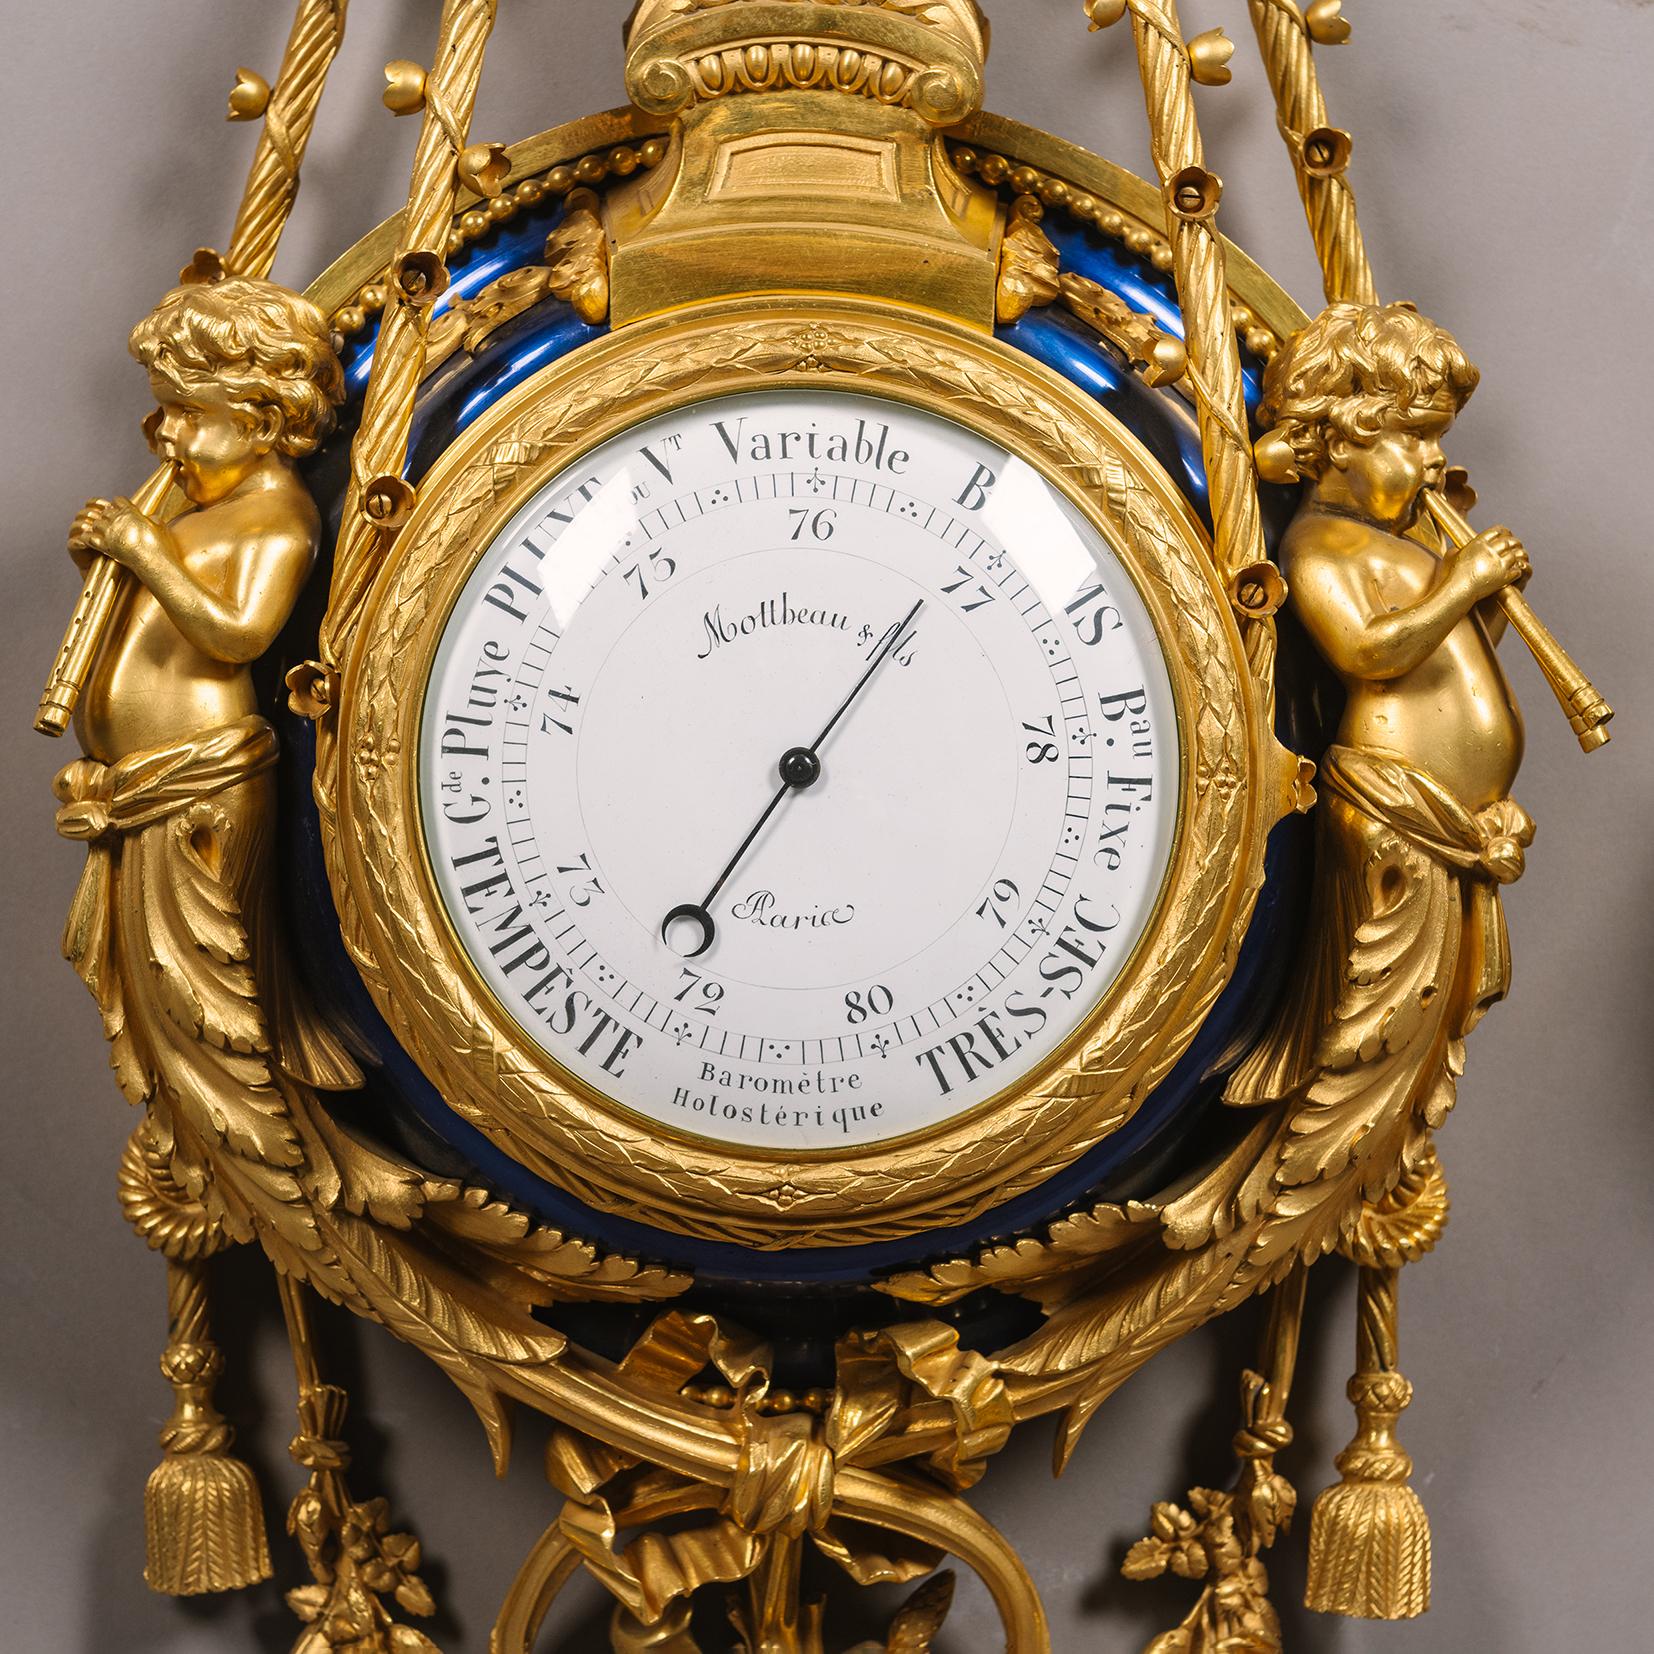 Horloge de cartel et baromètre en bronze doré et émail bleu de style Louis XVI, par la Maison Mottheau & Fils, Paris.

Cette exceptionnelle horloge de cartel et ce baromètre anéroïde présentent la plus belle production du bronzier Mottheau & Fils de